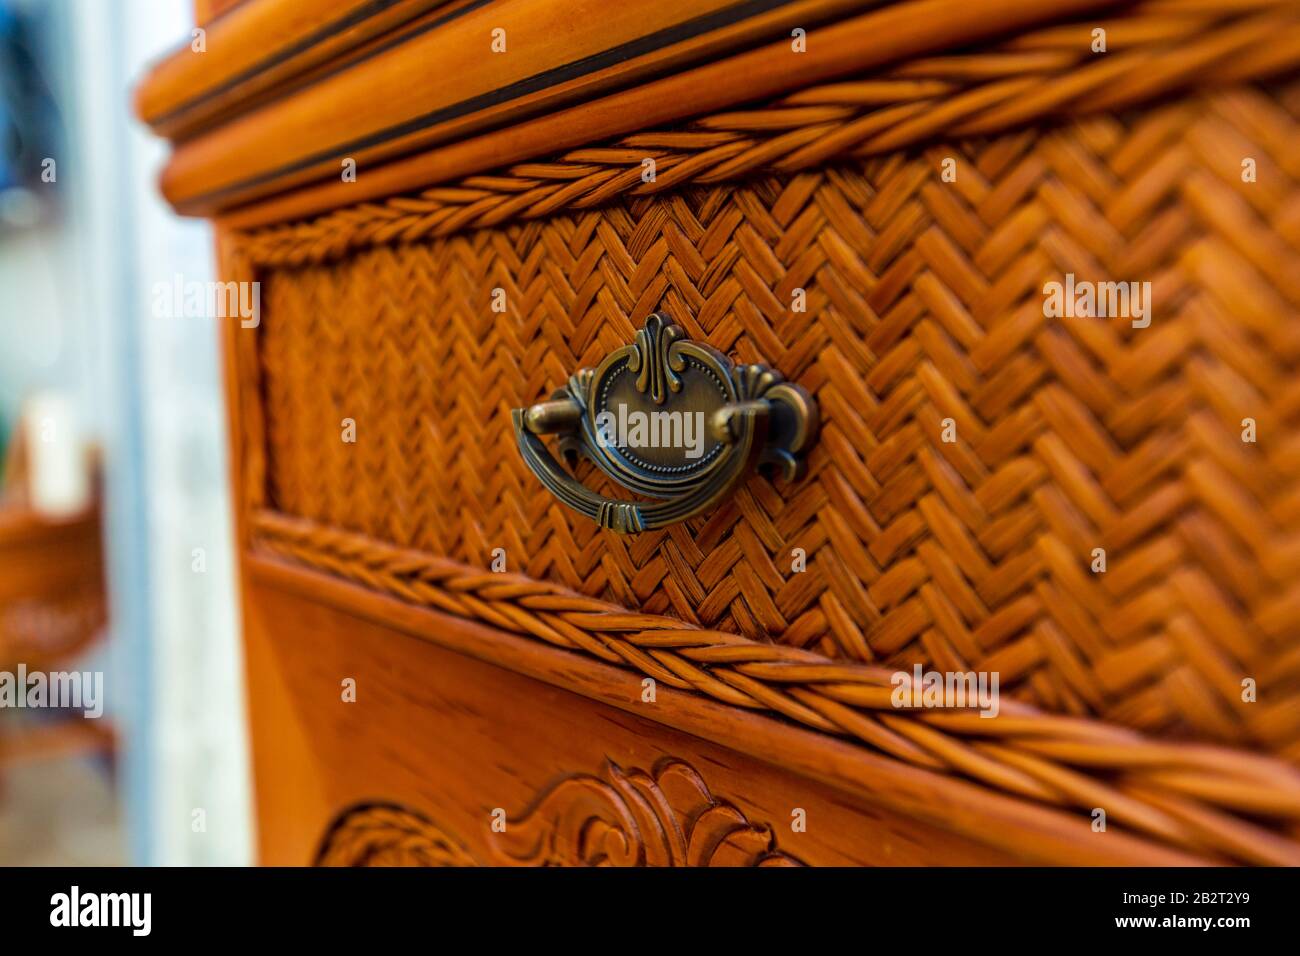 Metal Vintage Vintage Handle At The Wicker Dresser Made Of Wood